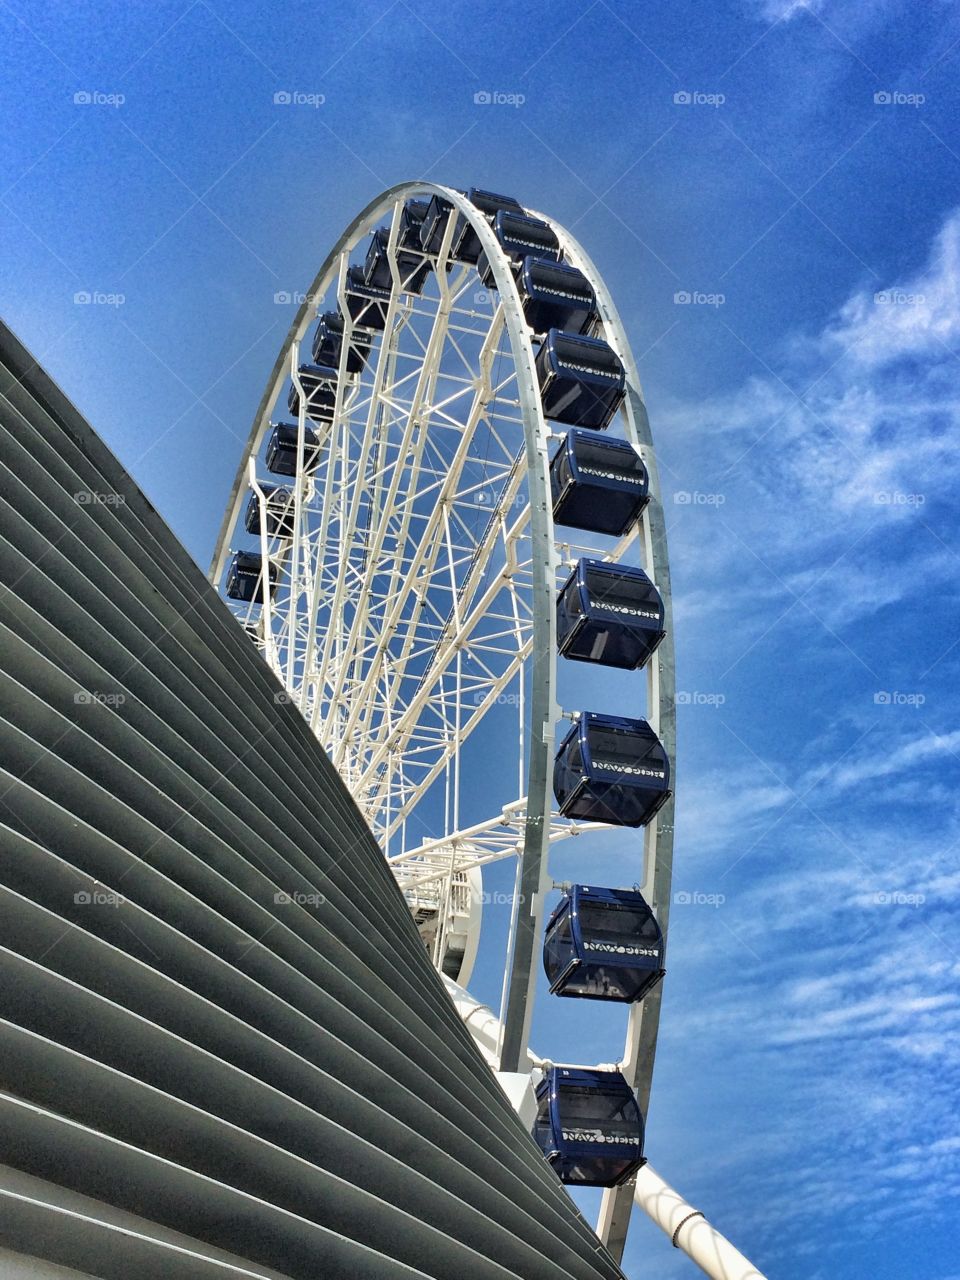 Ferris wheel at Navy Pier in Chicago